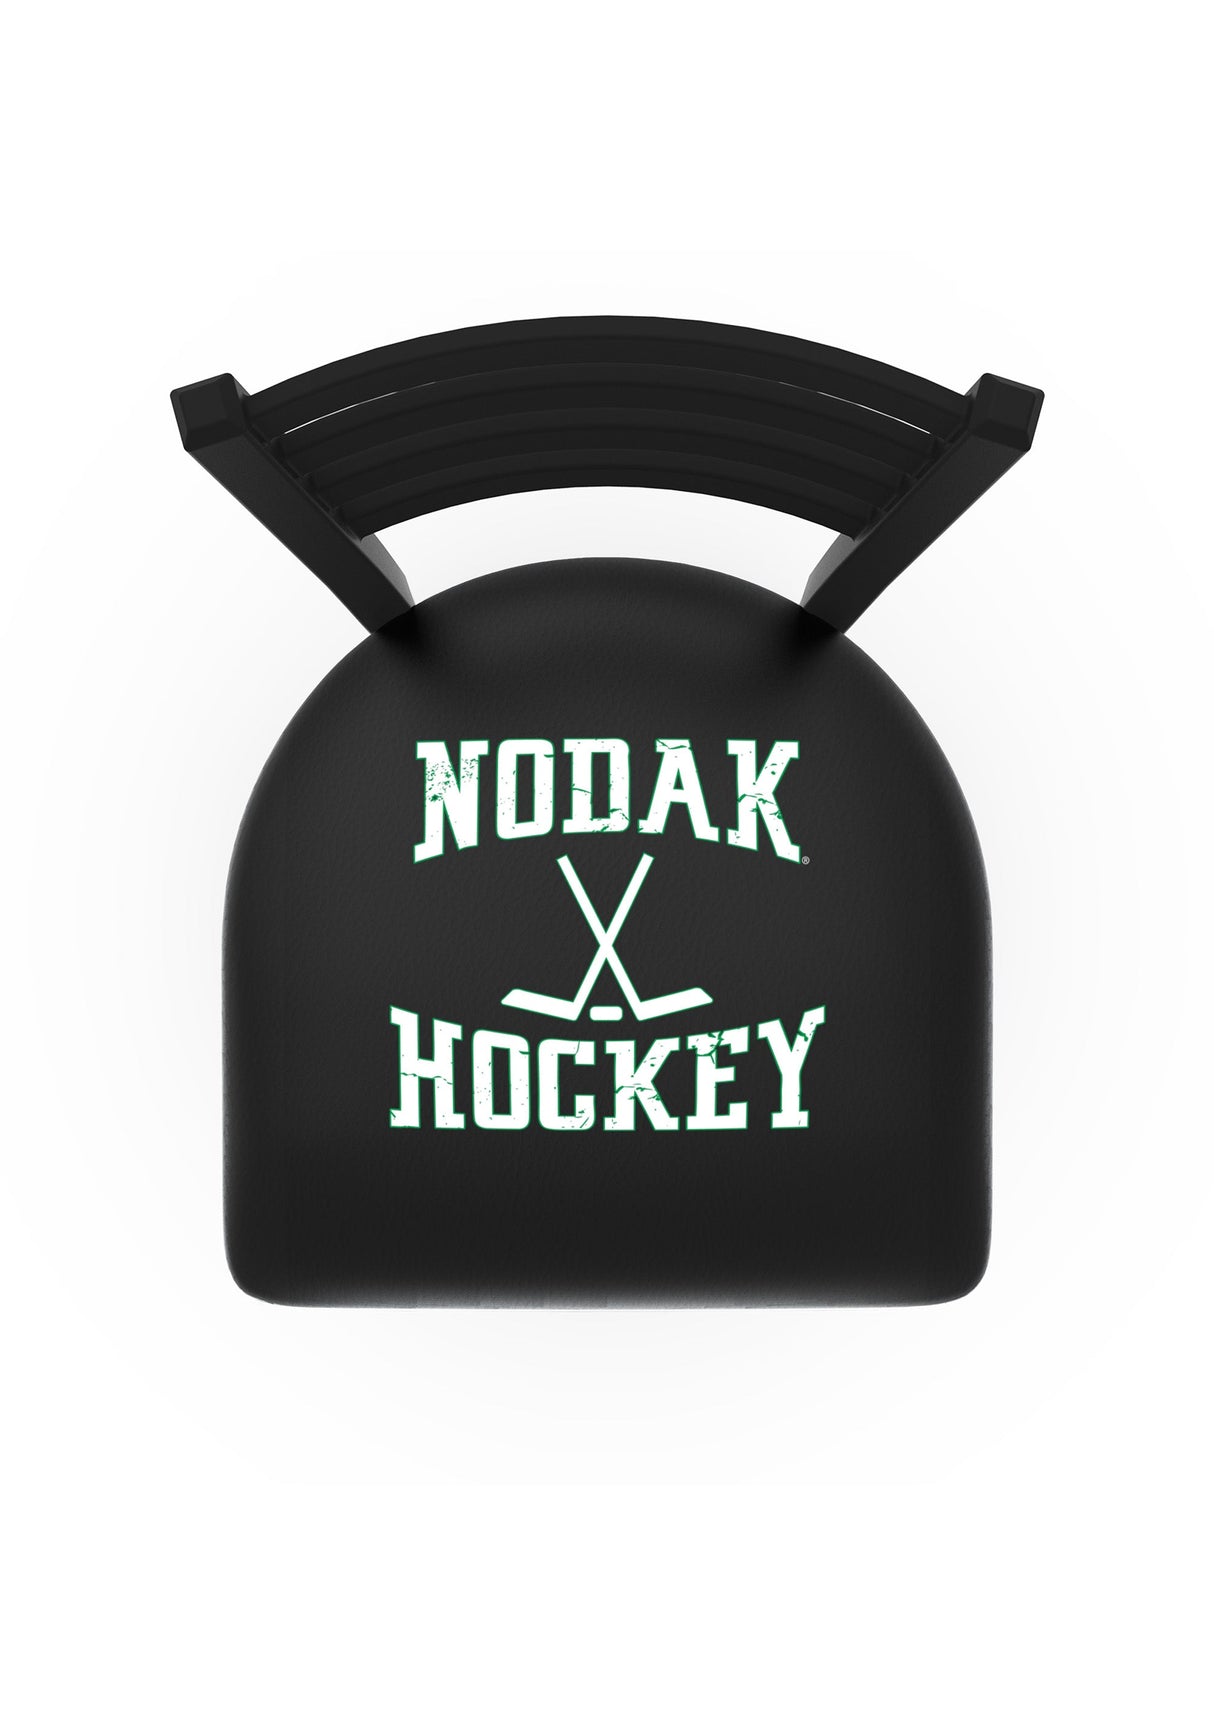 University of North Dakota Nodak Hockey Stationary Bar Stool | Nodak Hockey Stationary Bar Stool